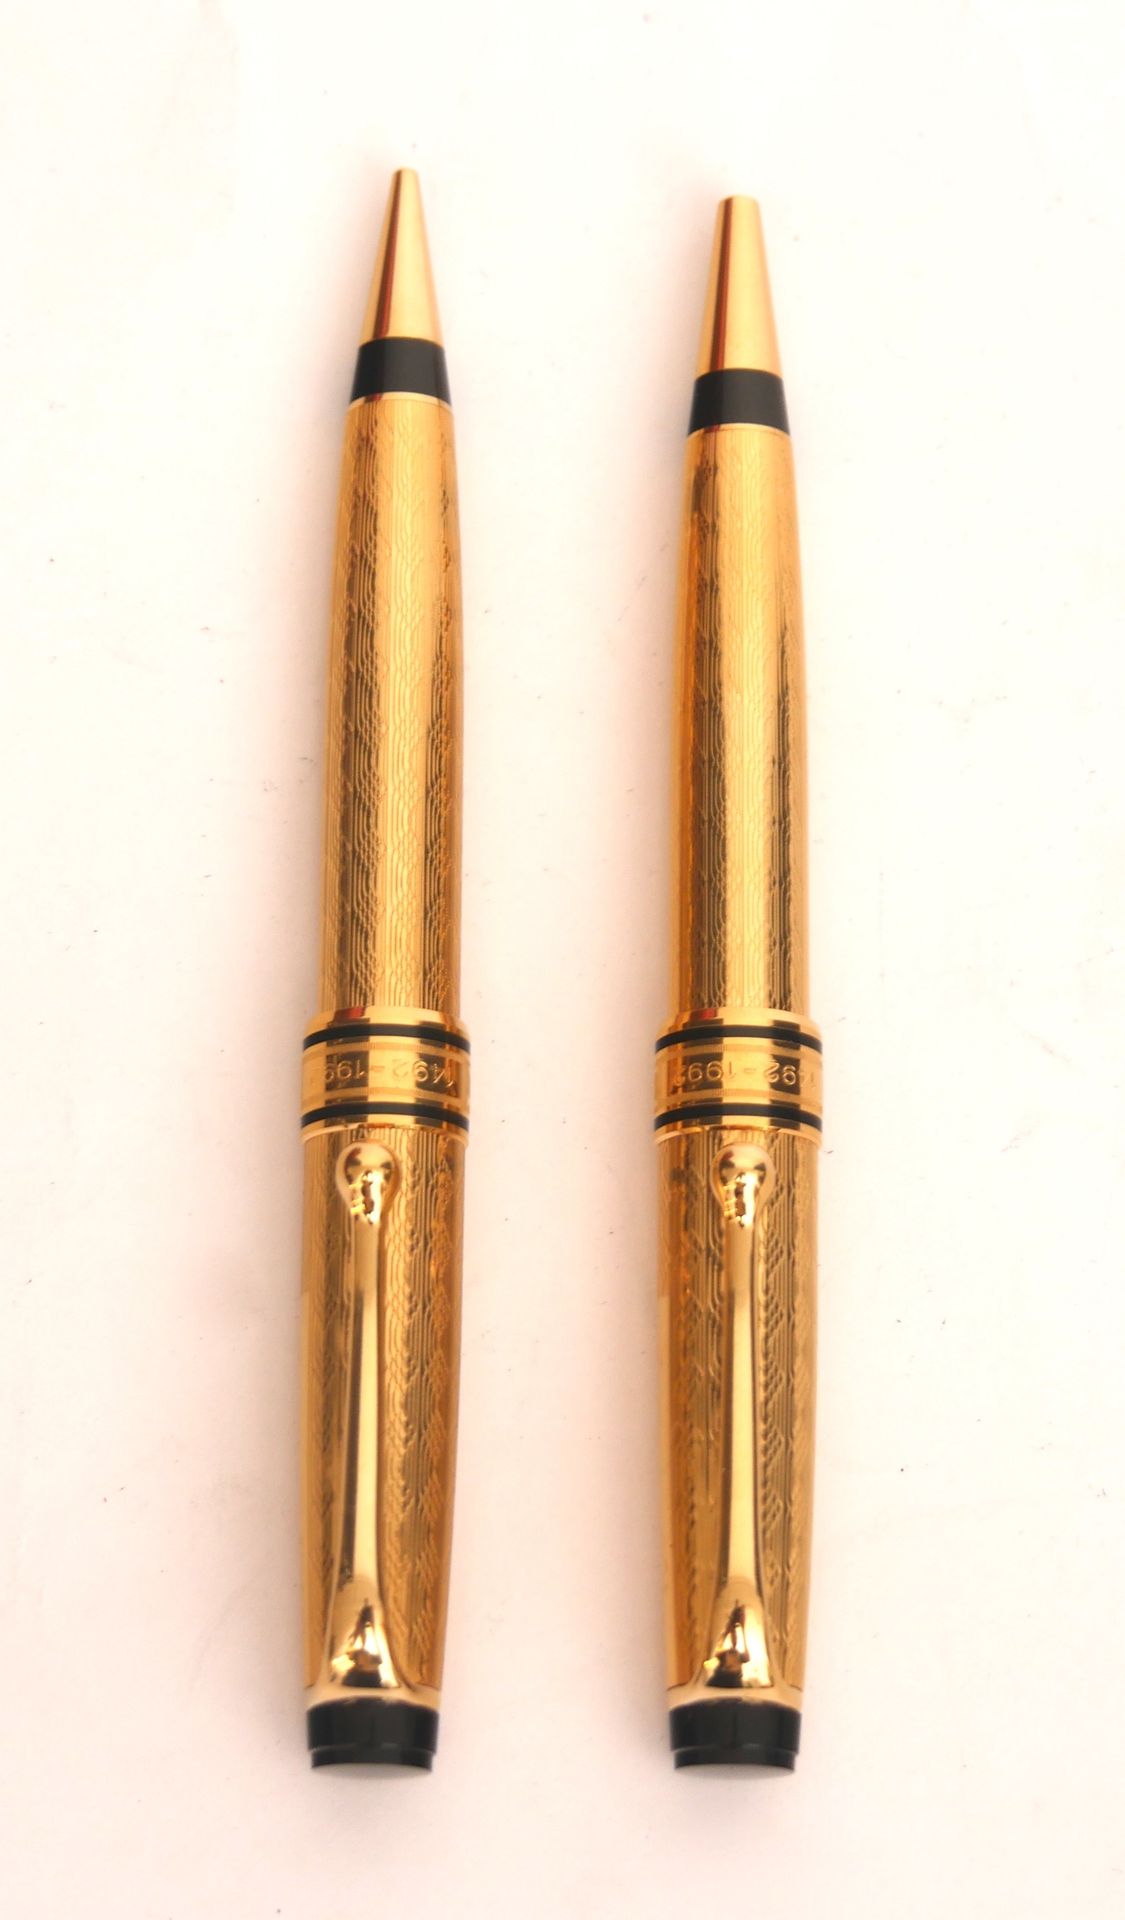 Null 傲罗拉

科伦坡500

镀金和黑漆金属双头笔和钢笔套装

刻有1492-1992年，奥罗拉，编号0827

长：13厘米，5.1英寸。

来自圣萨尔&hellip;